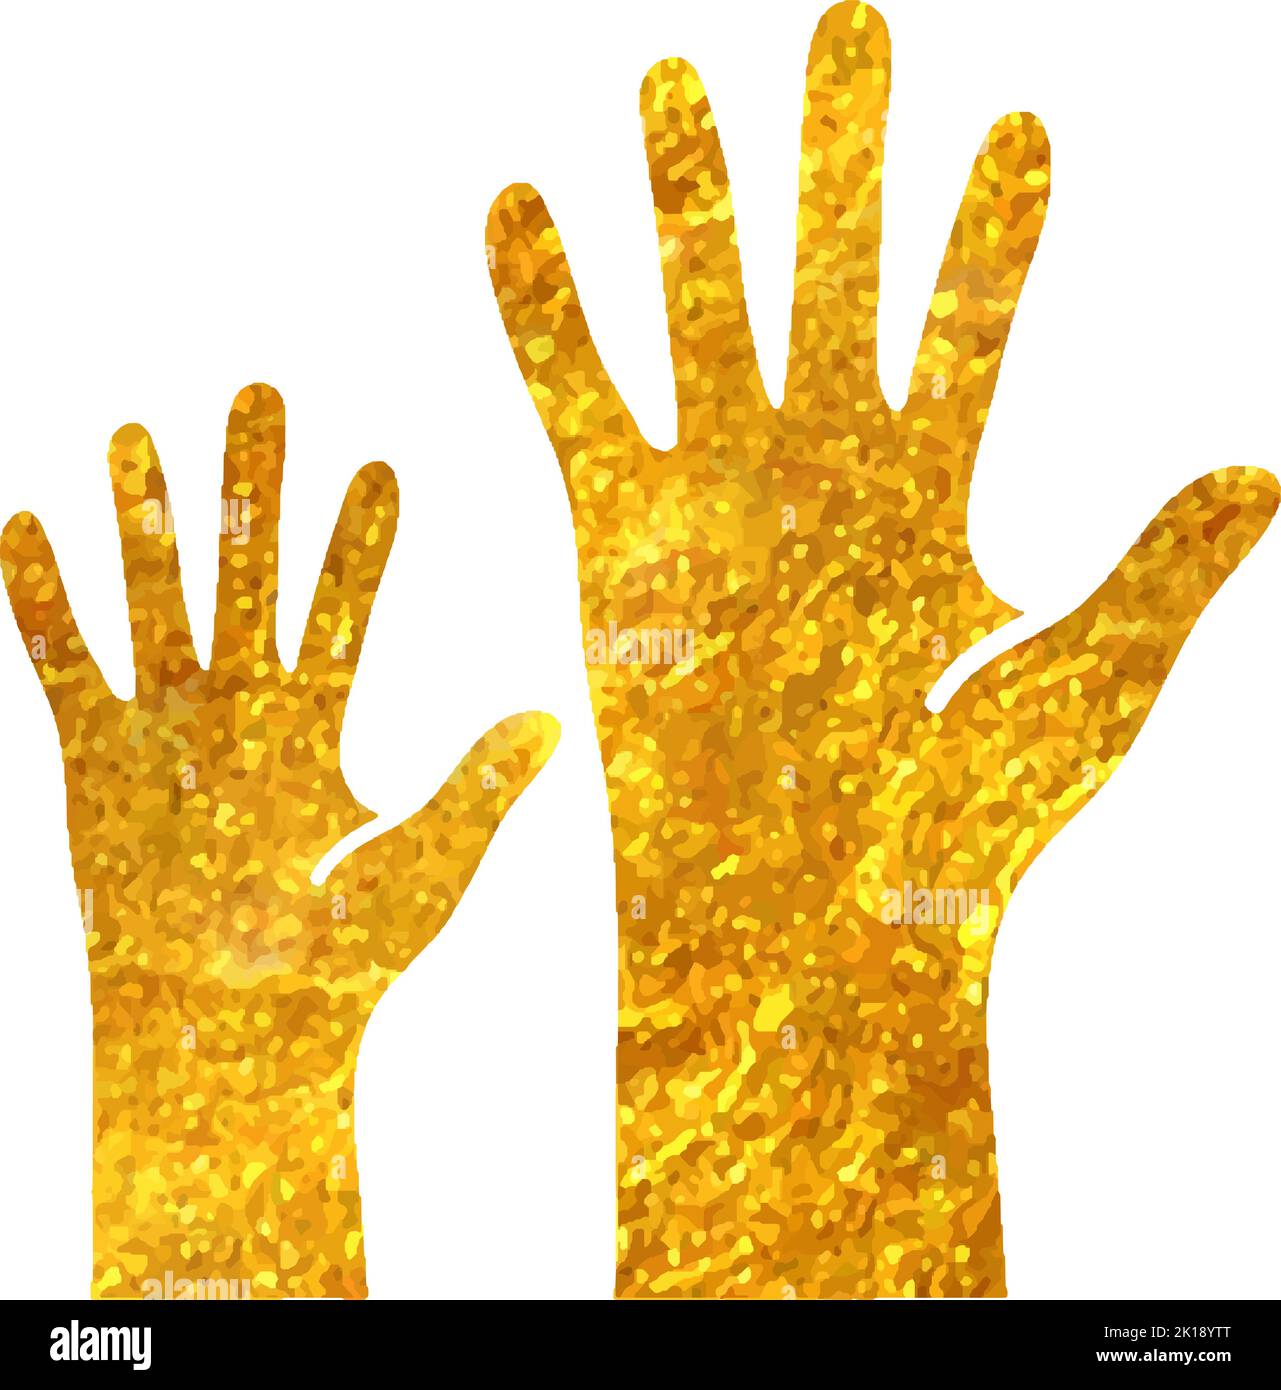 Icône représentant des mains dessinées à la main dans l'illustration du vecteur de texture d'une feuille d'or Illustration de Vecteur